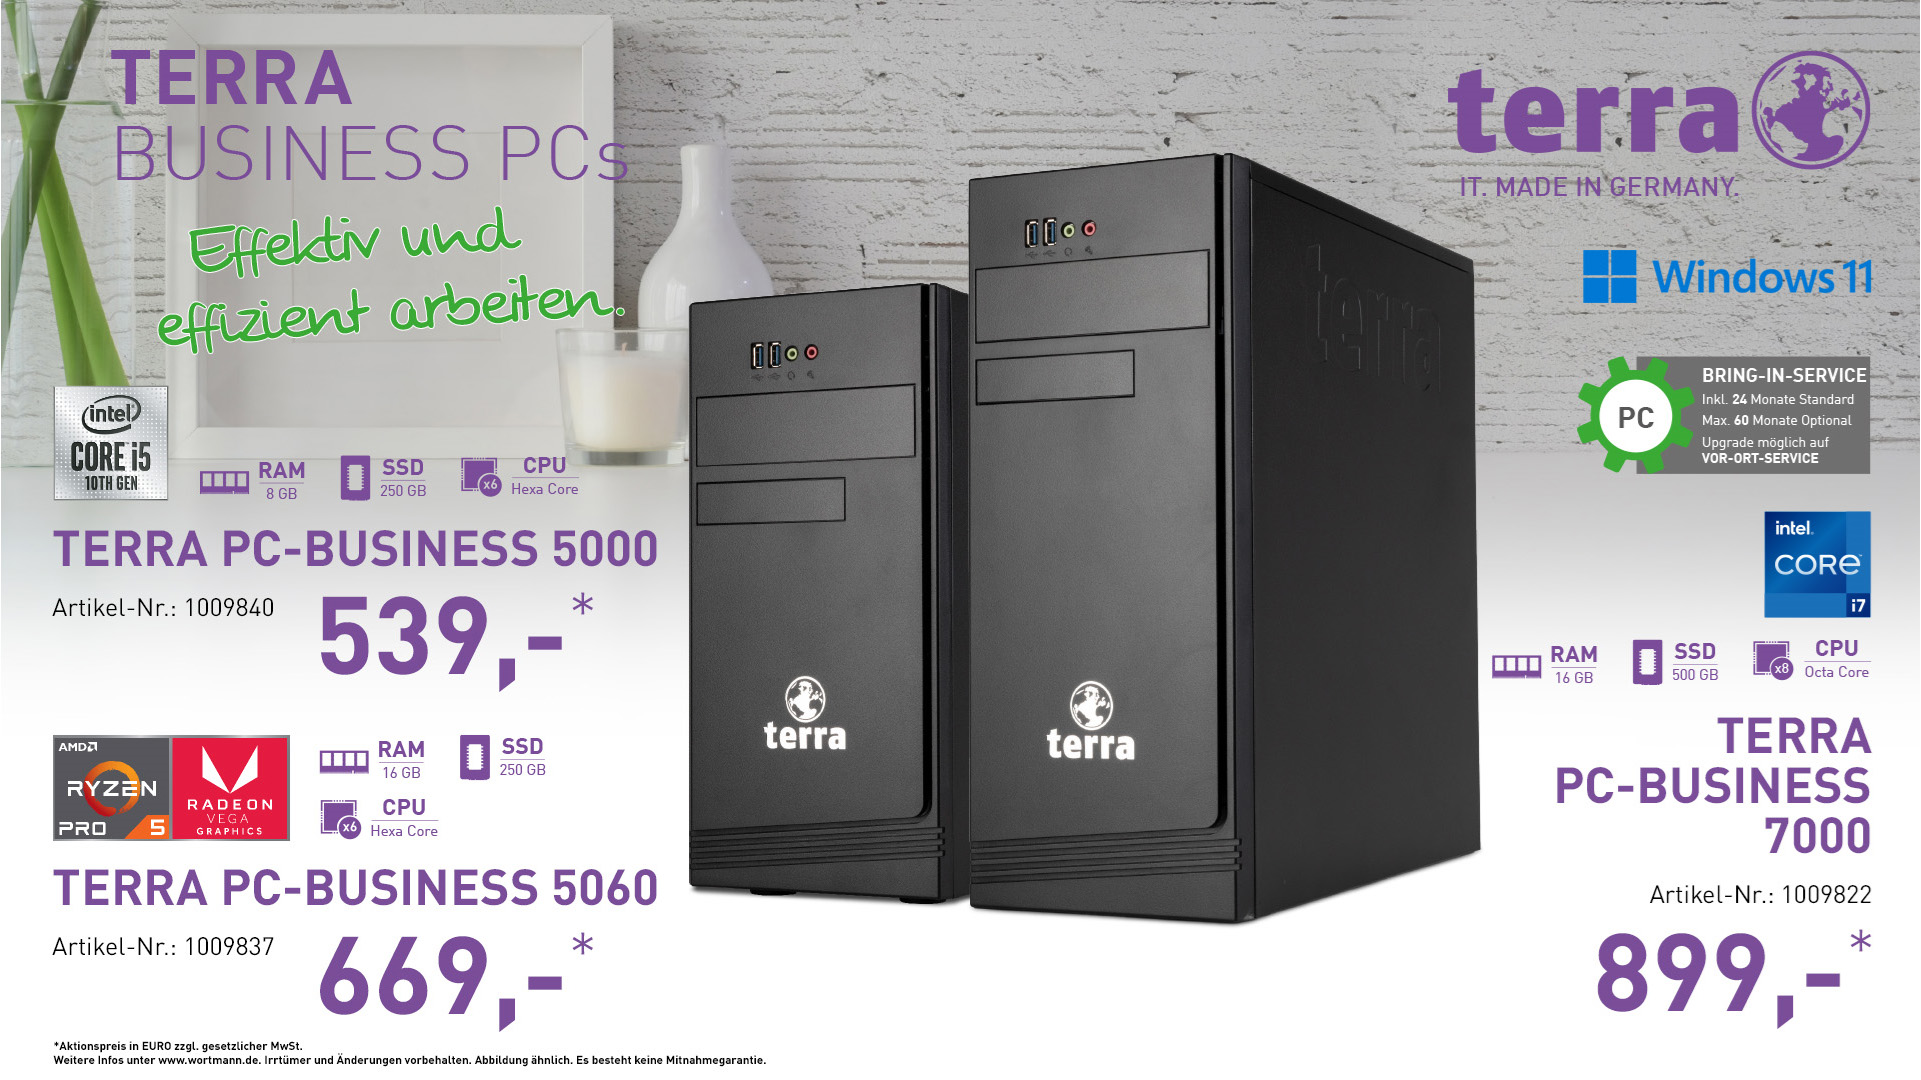 TERRA PC-BUSINESS 5000, 5060 und 7000